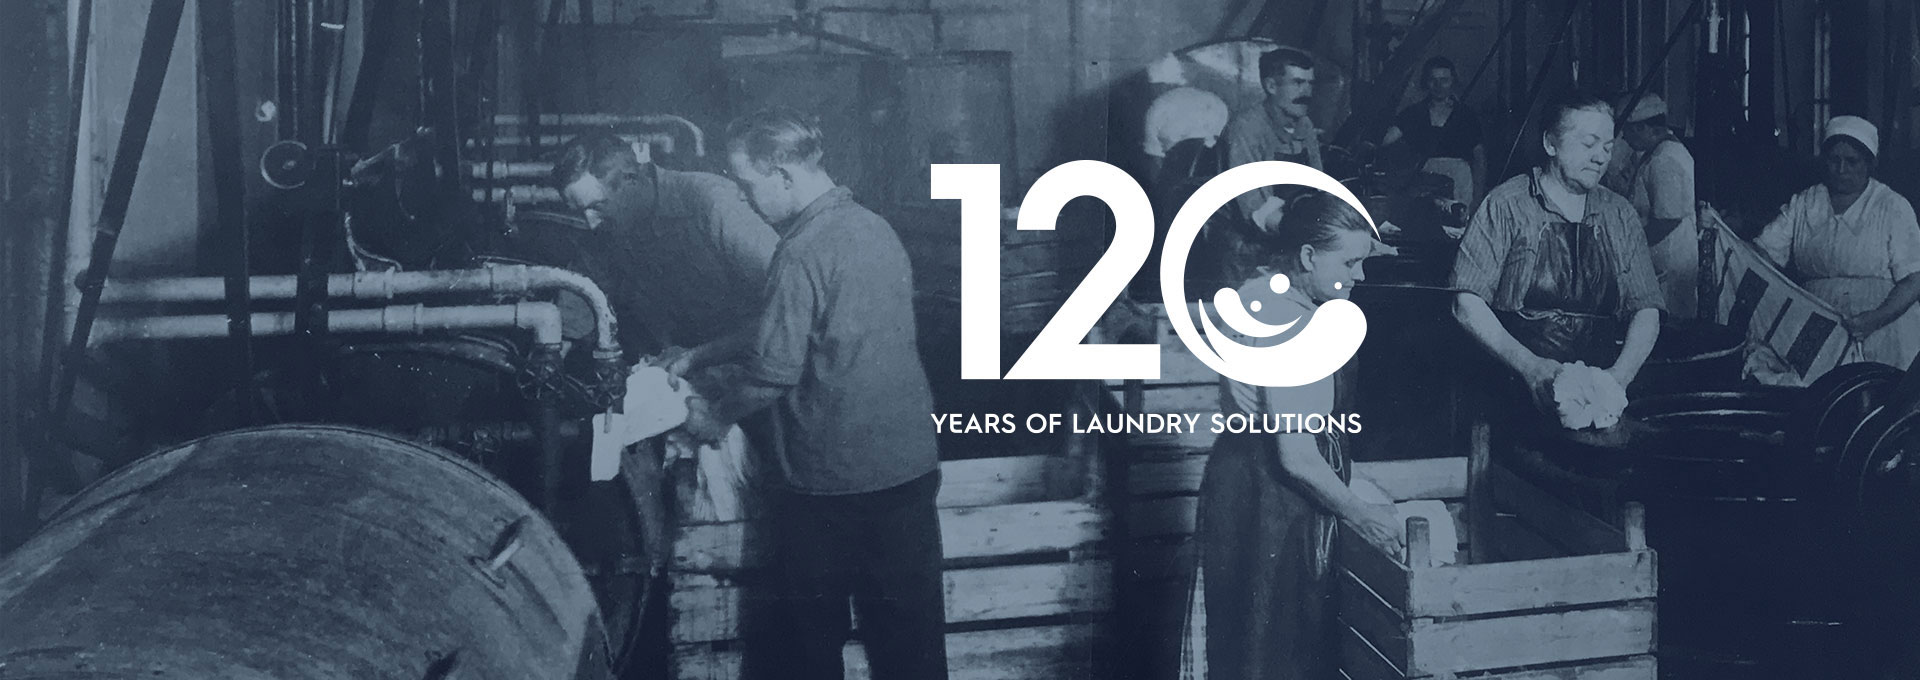 120 years laundry